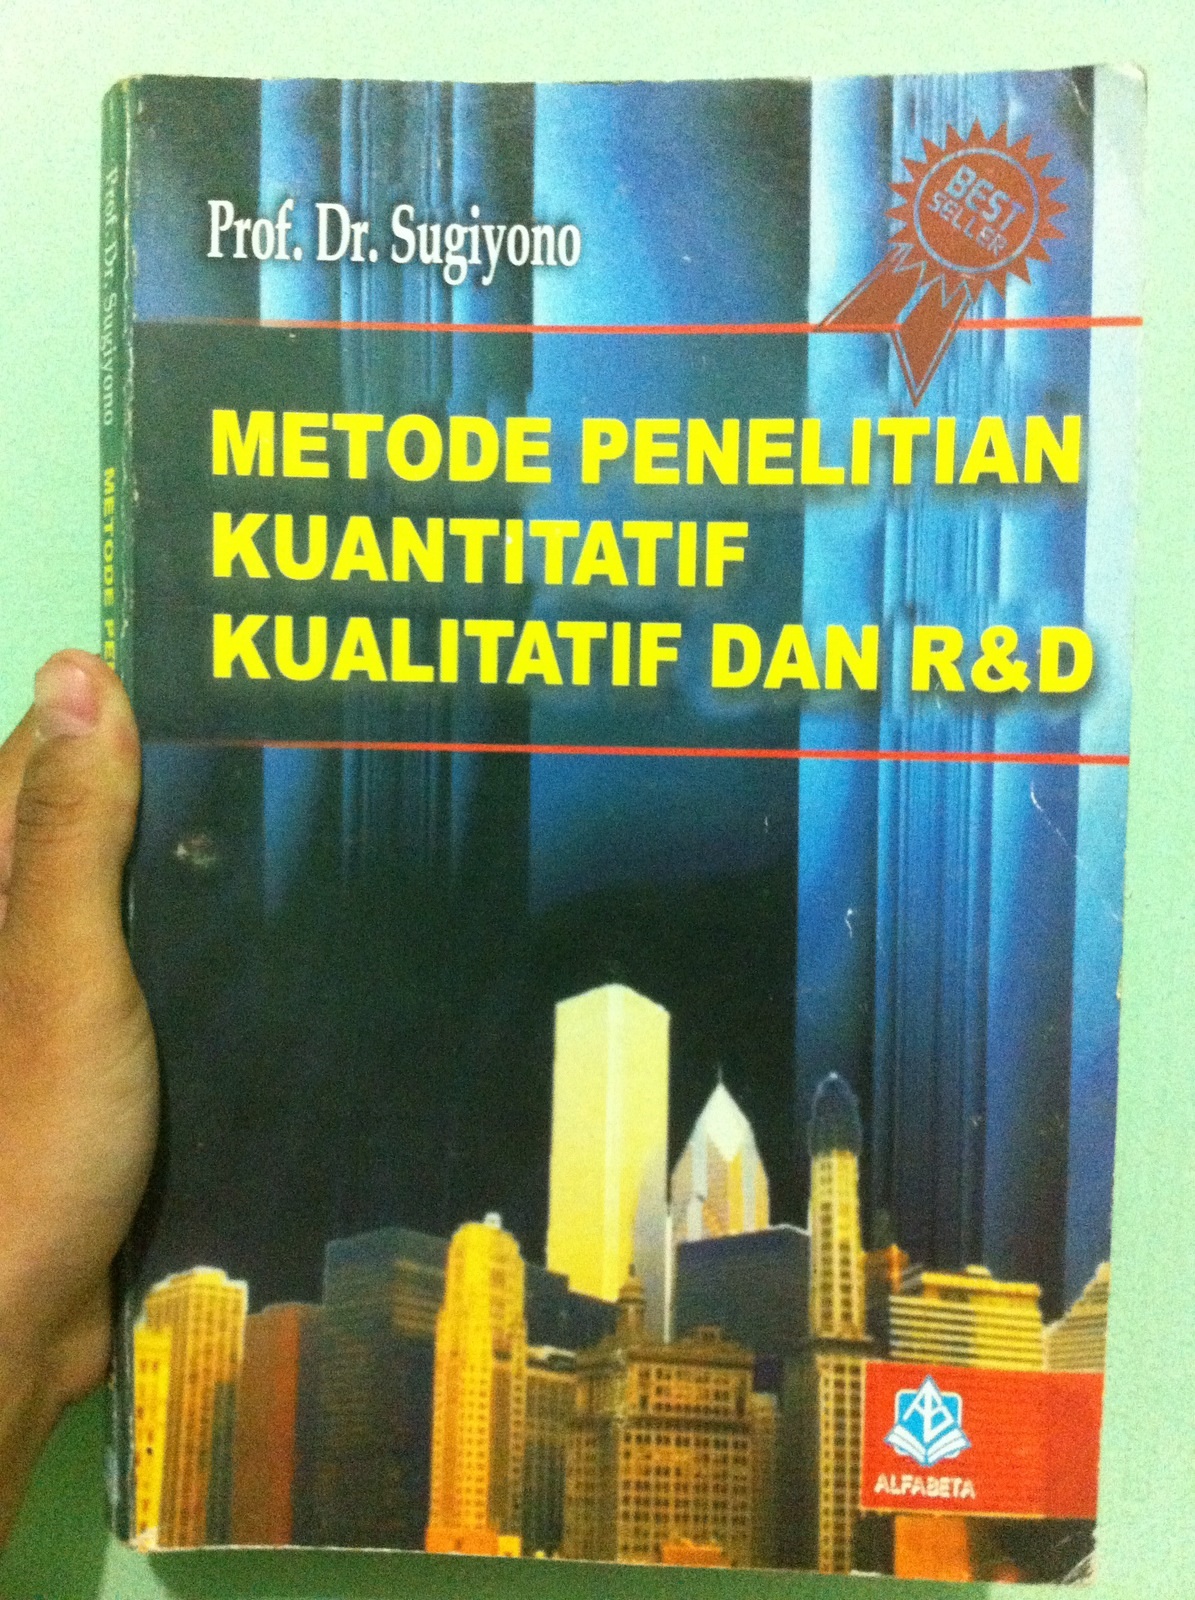 Sugiyono. 2011. Metode Penelitian Kuantitatif Kualitatif Dan R&d. Bandung Alfabeta